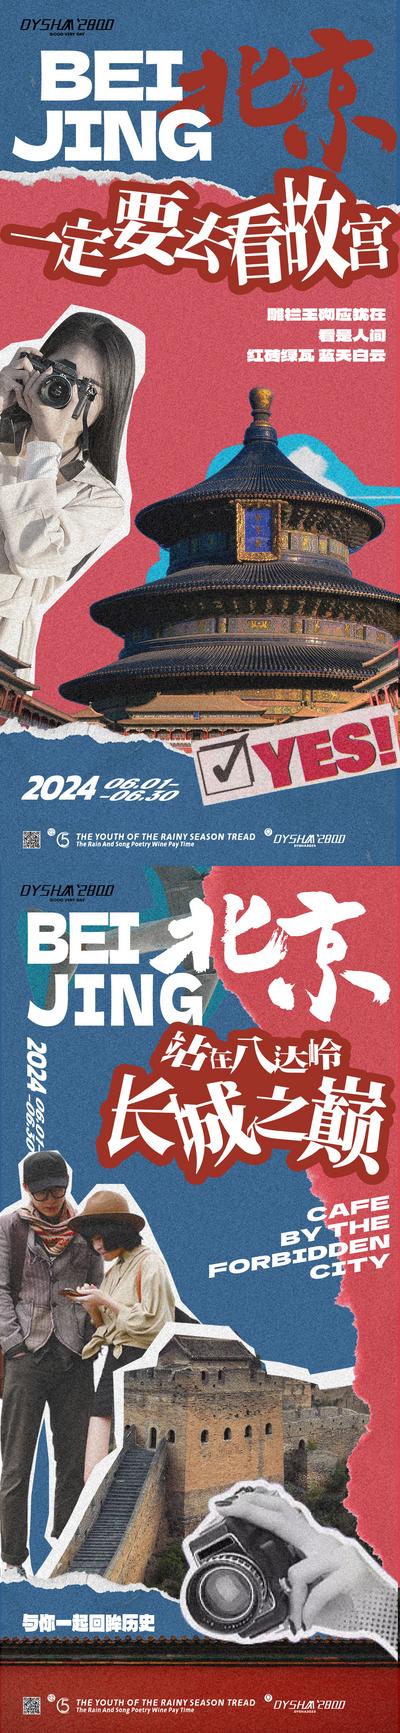 【南门网】广告 海报 旅游 北京 旅行 故宫 天坛 地标 天安门 系列